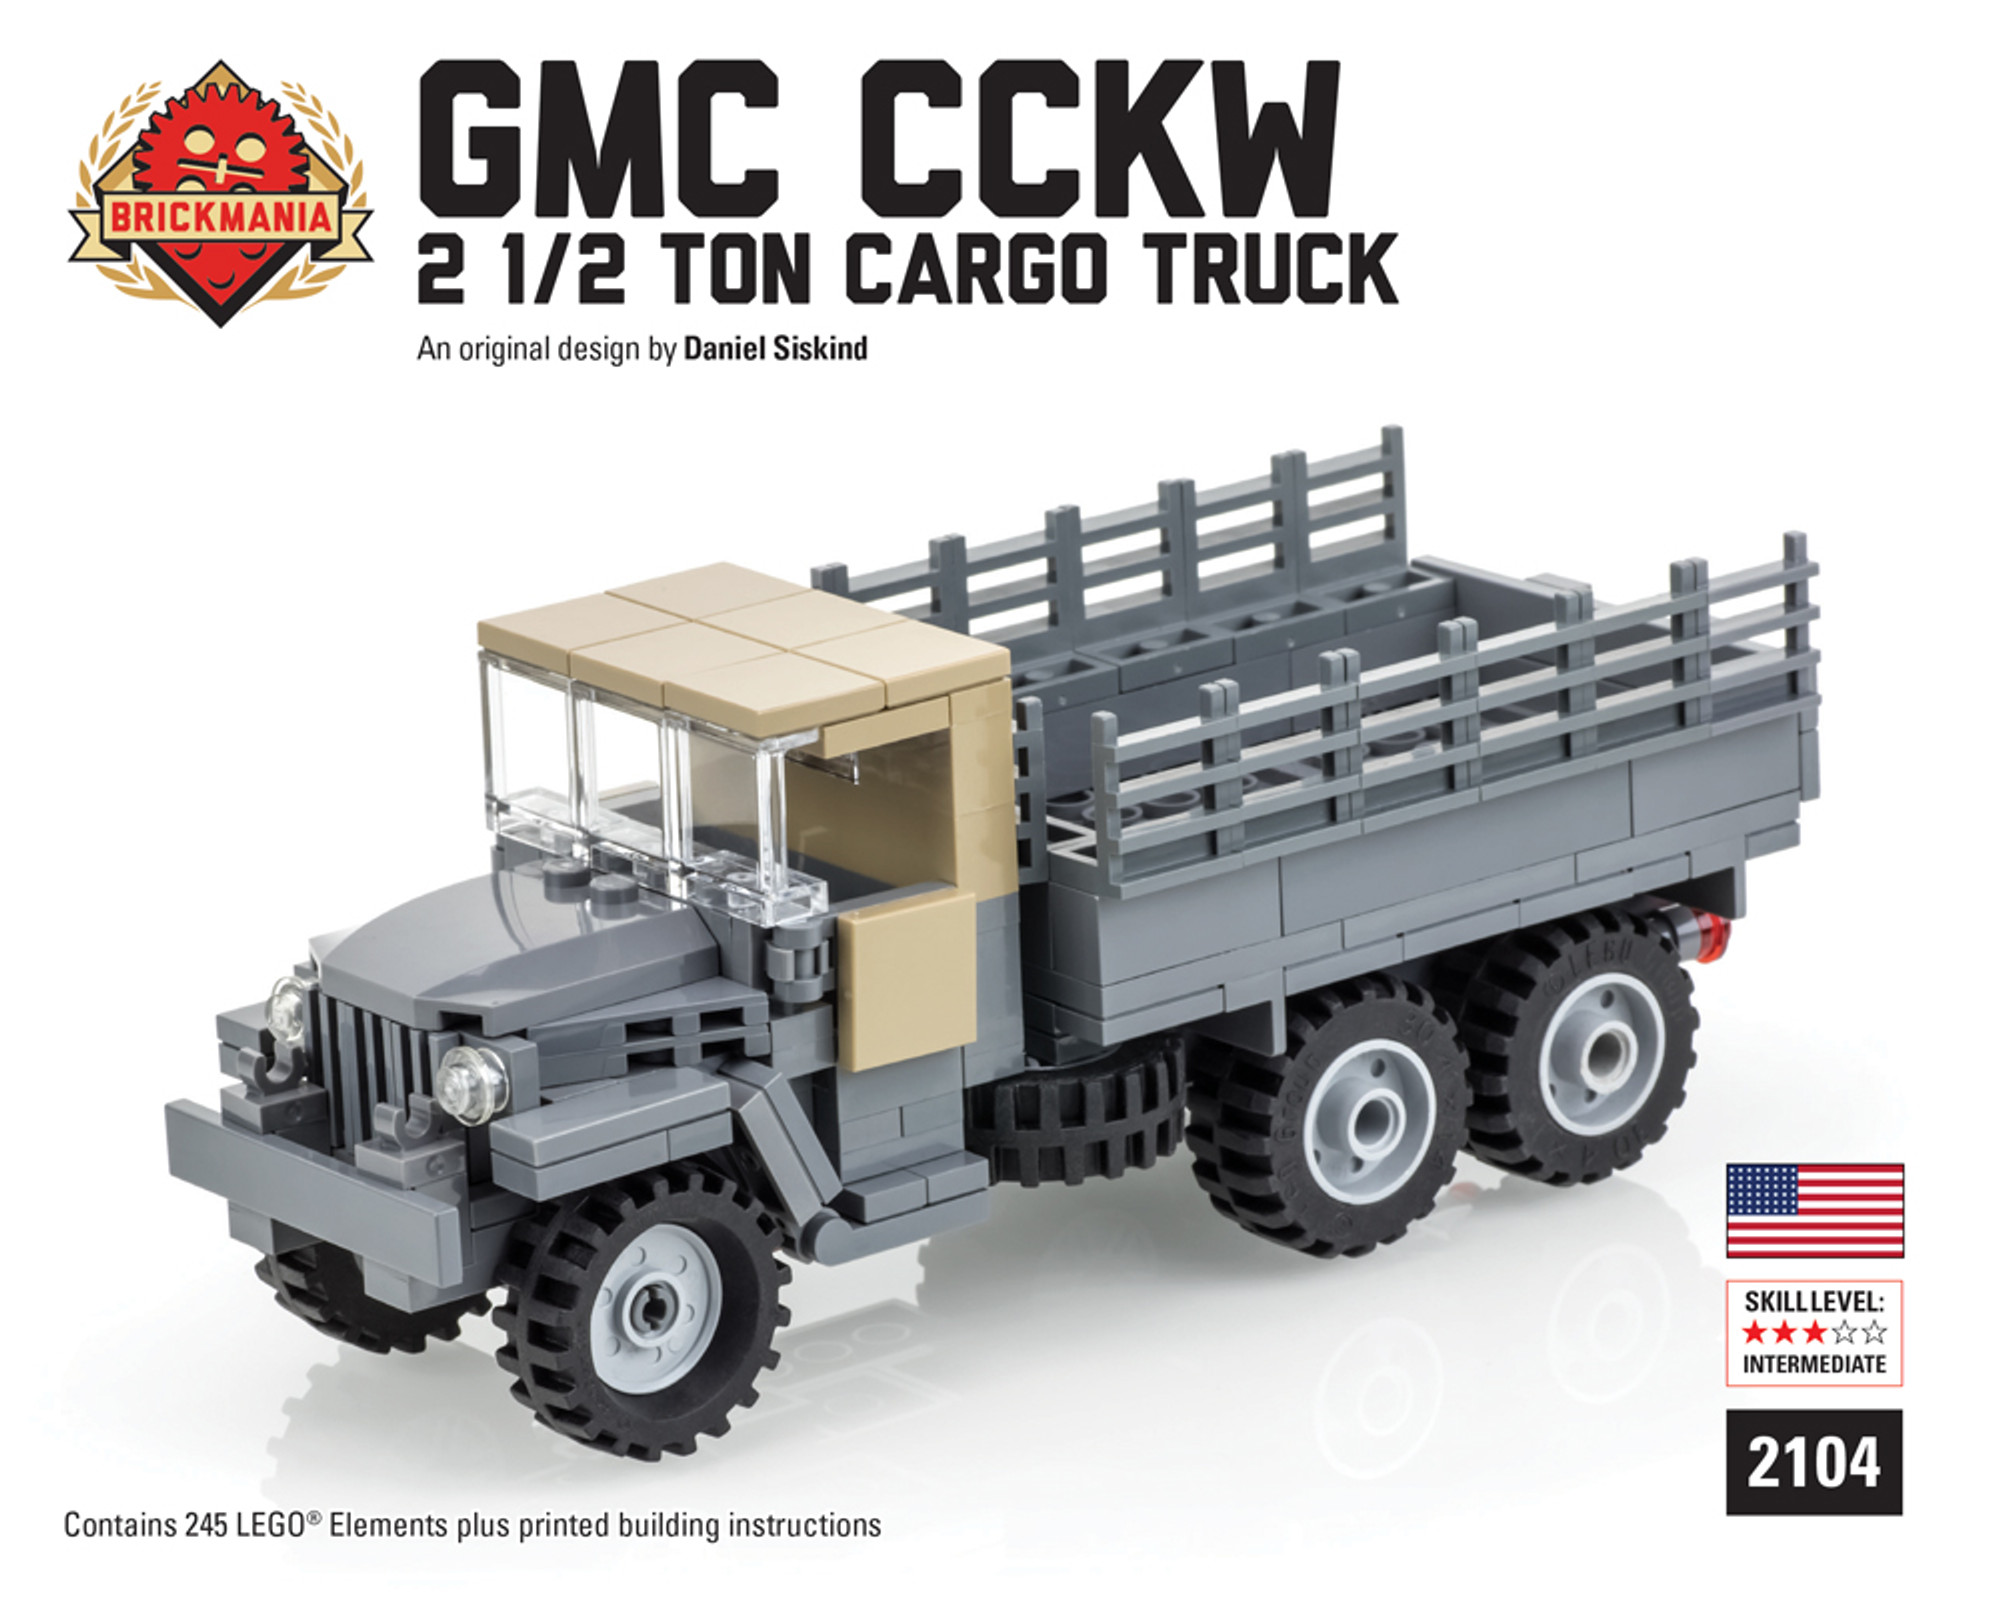 CCKW 2 1/2 Ton Cargo Truck